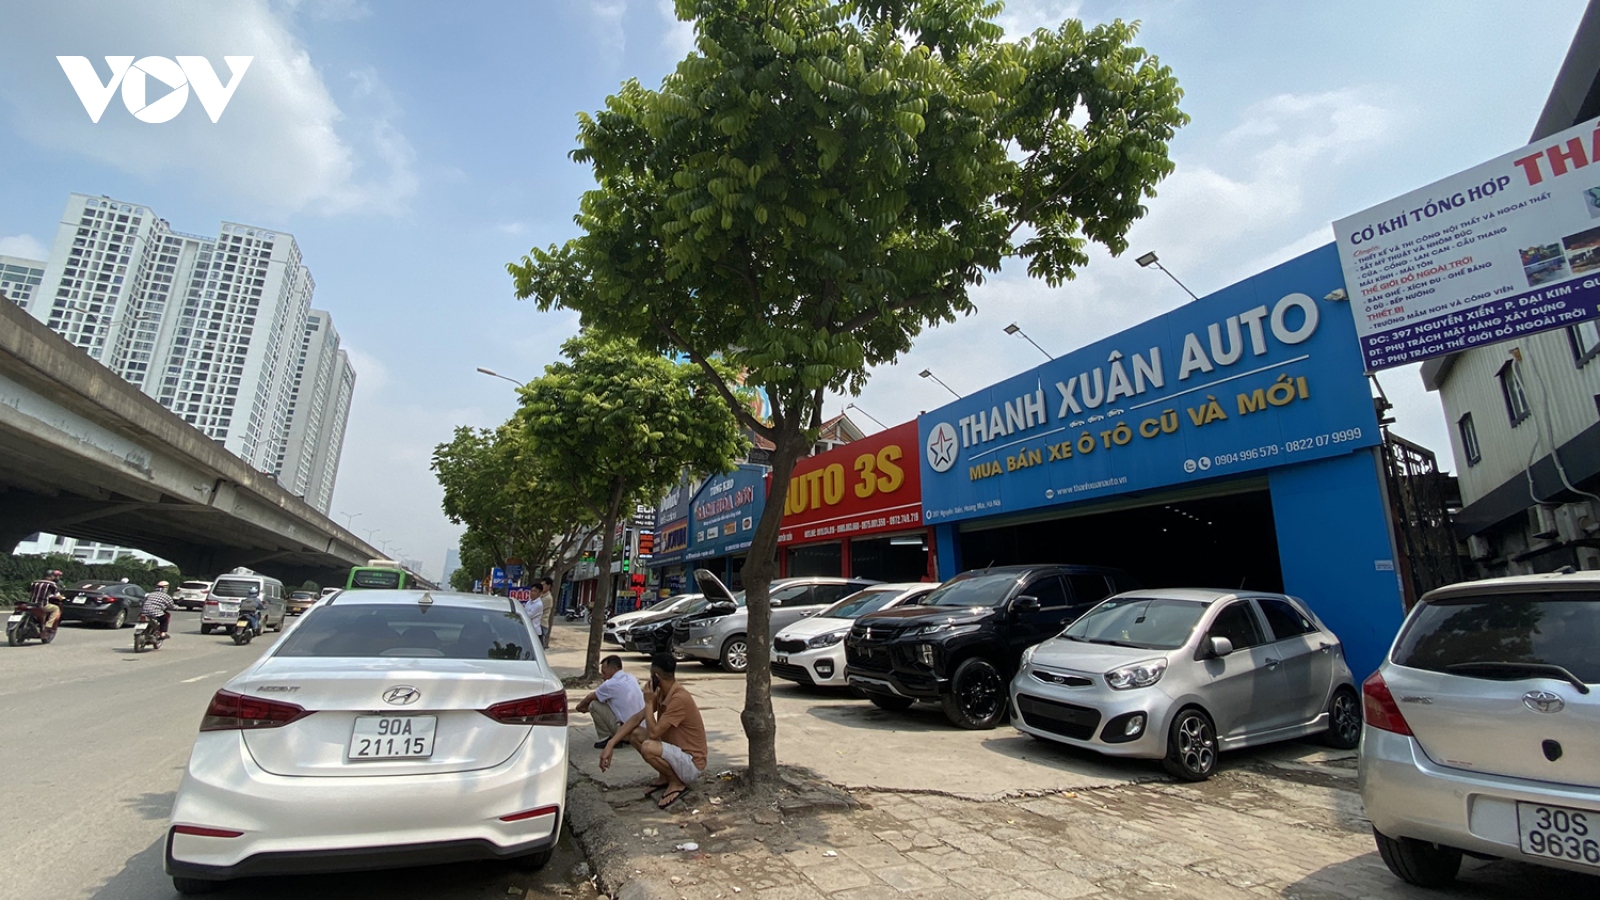 Gara ô tô ở Hà Nội ngang nhiên lấn chiếm vỉa hè để kinh doanh